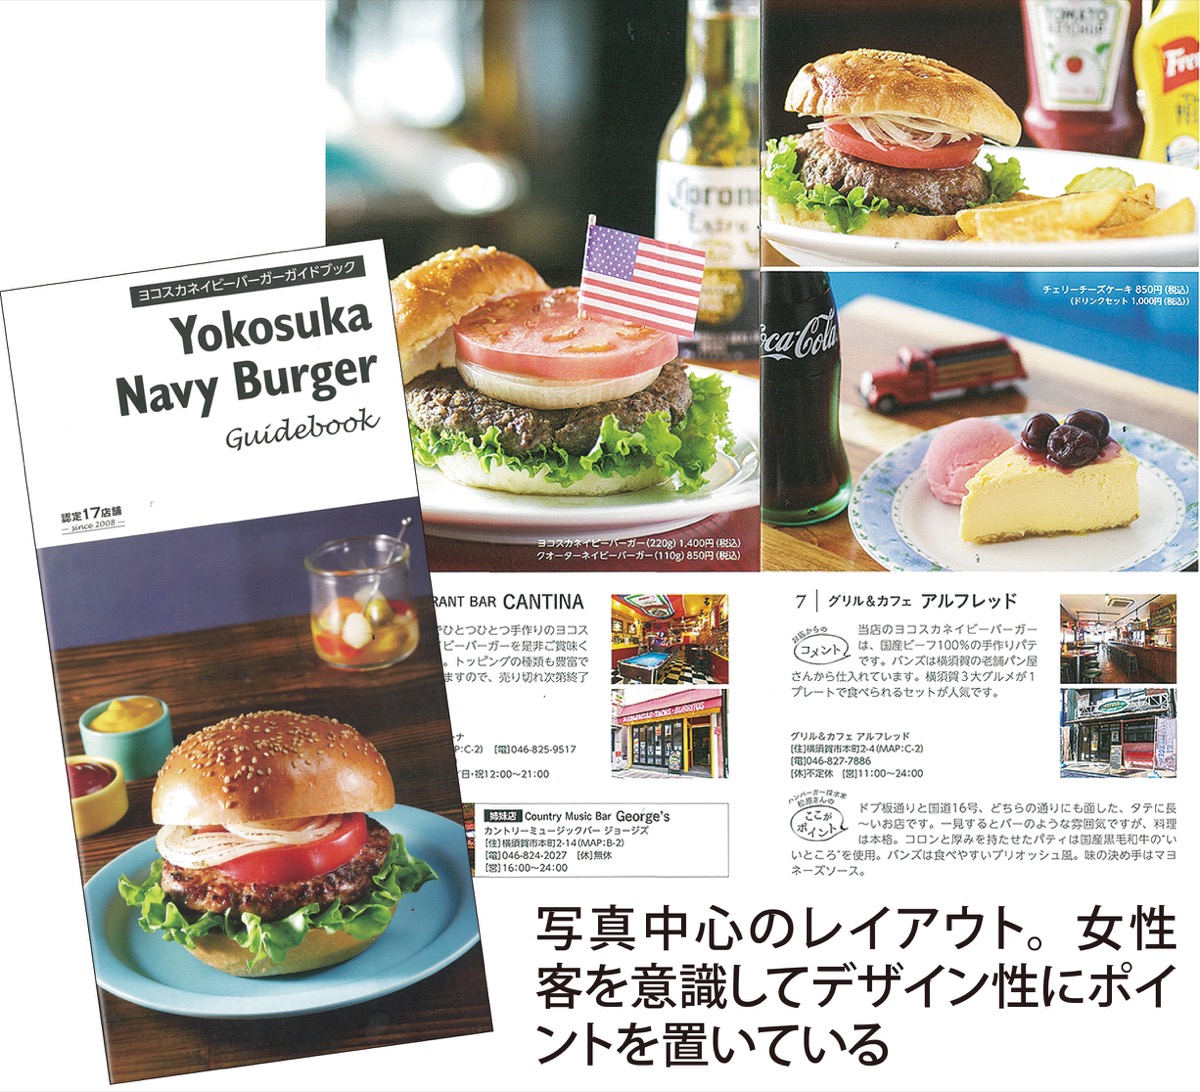 ネイビーバーガー チーズケーキ 視覚情報アップ 横須賀 タウンニュース